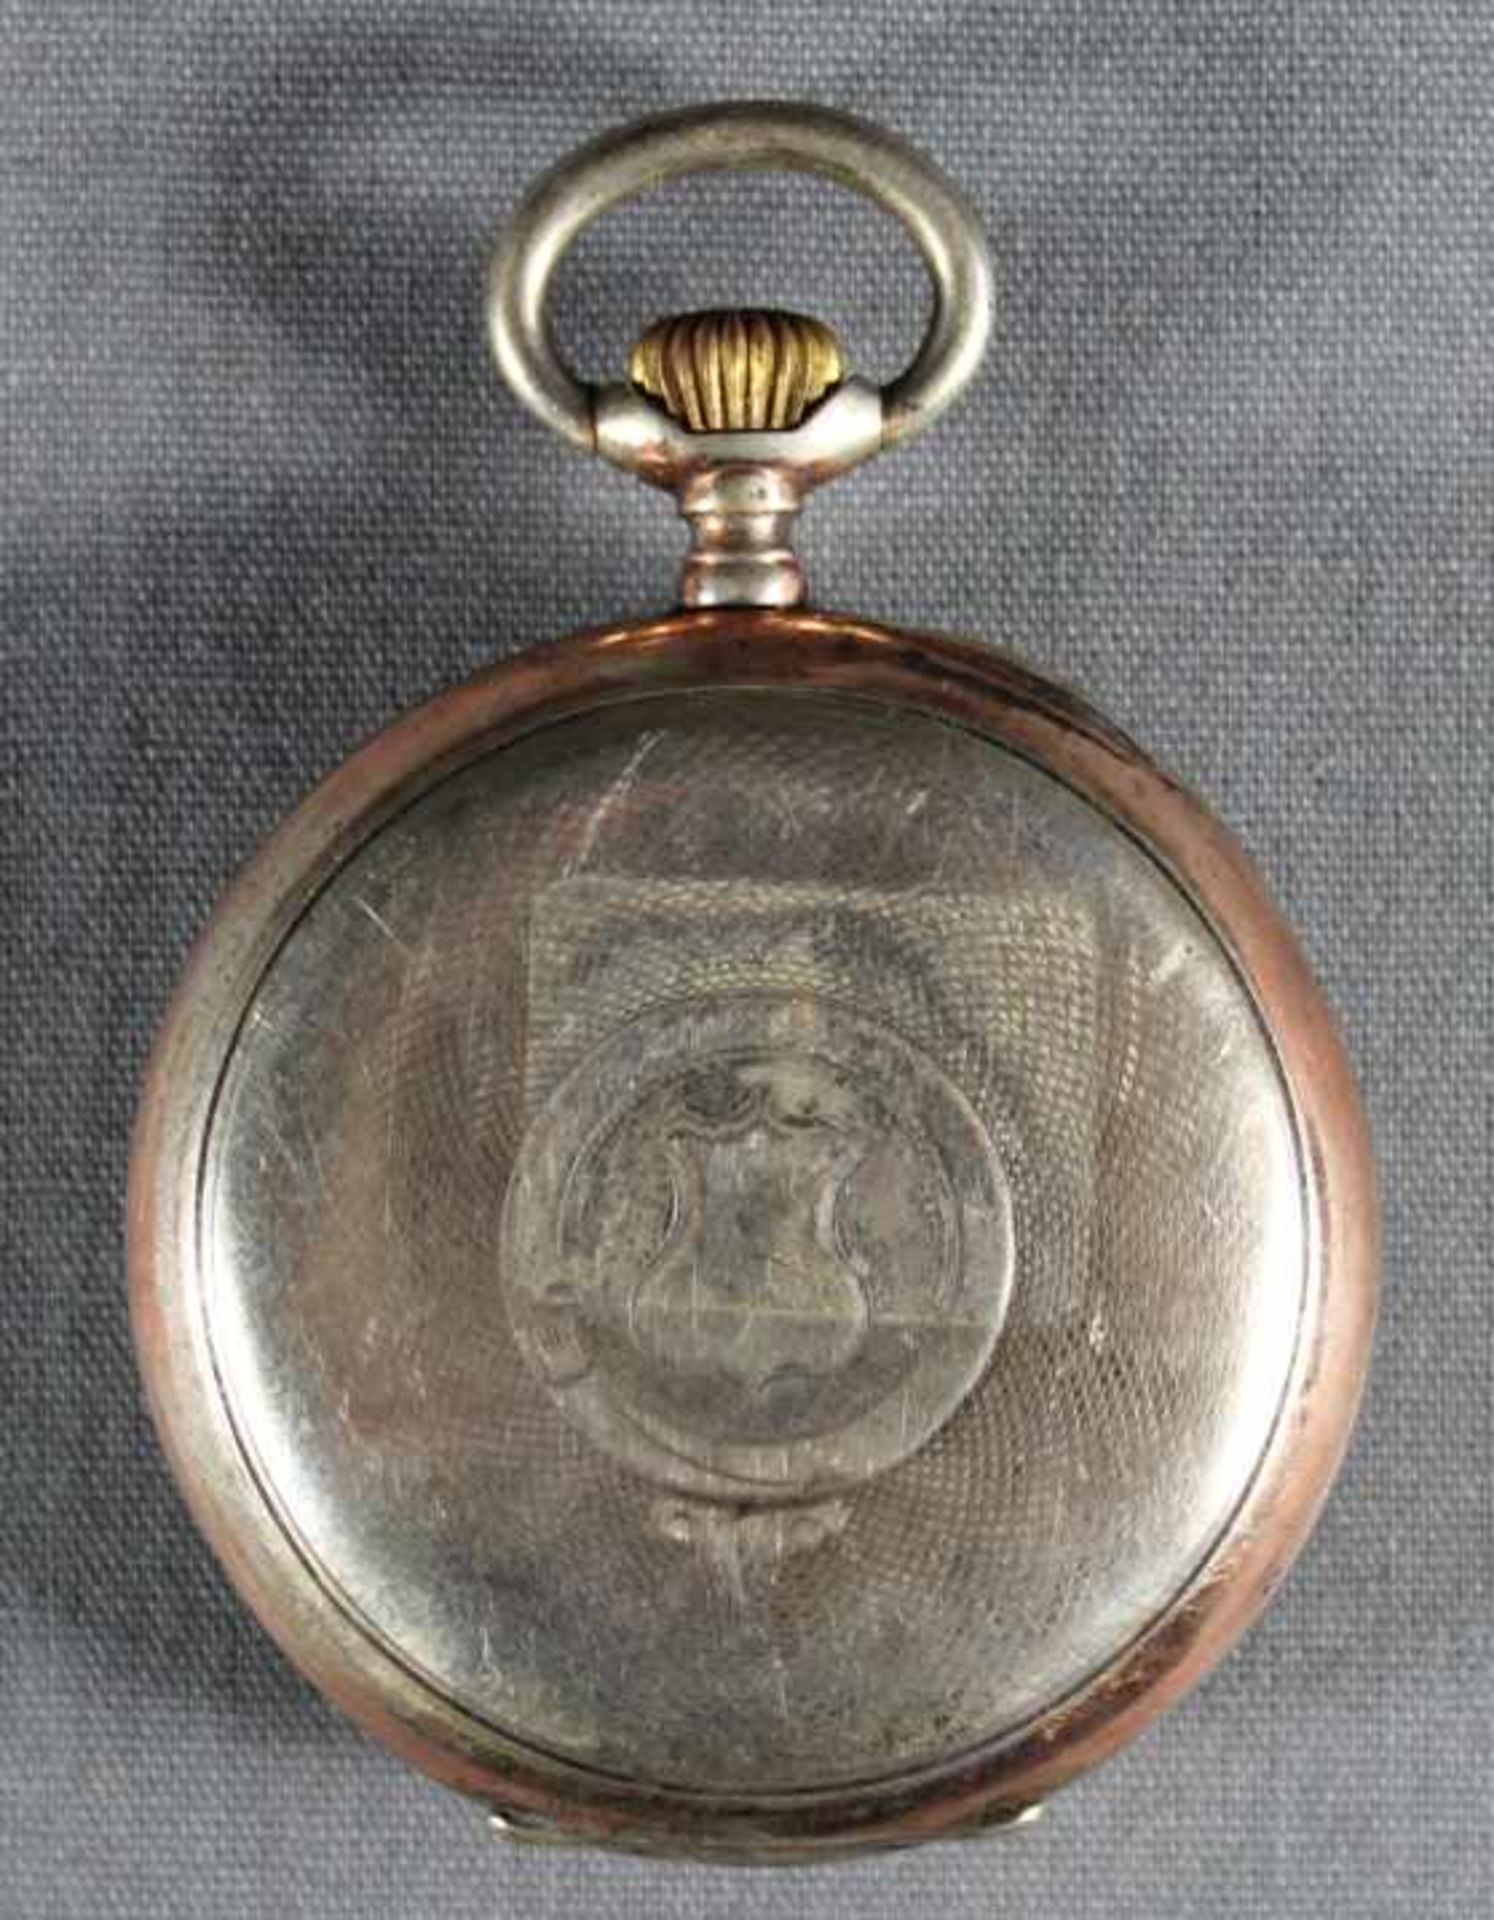 1 Taschenuhr Silber (800/000), Punzen u.a. Halbmond und Krone, Nr. 1354768, Rückseite mit - Image 2 of 4